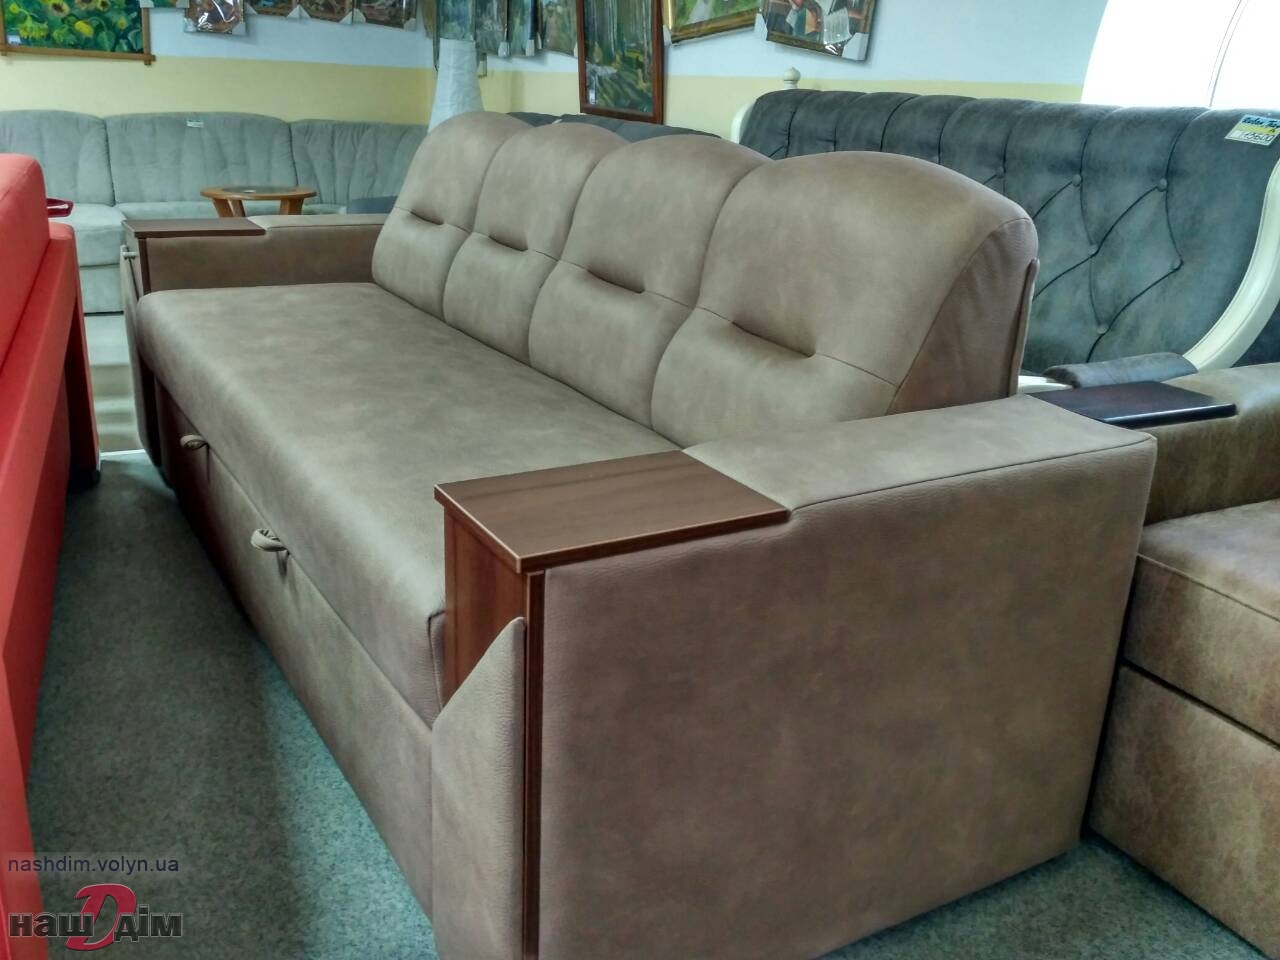 Каїр софа - диван Даніро ID459-2 матеріали та колір